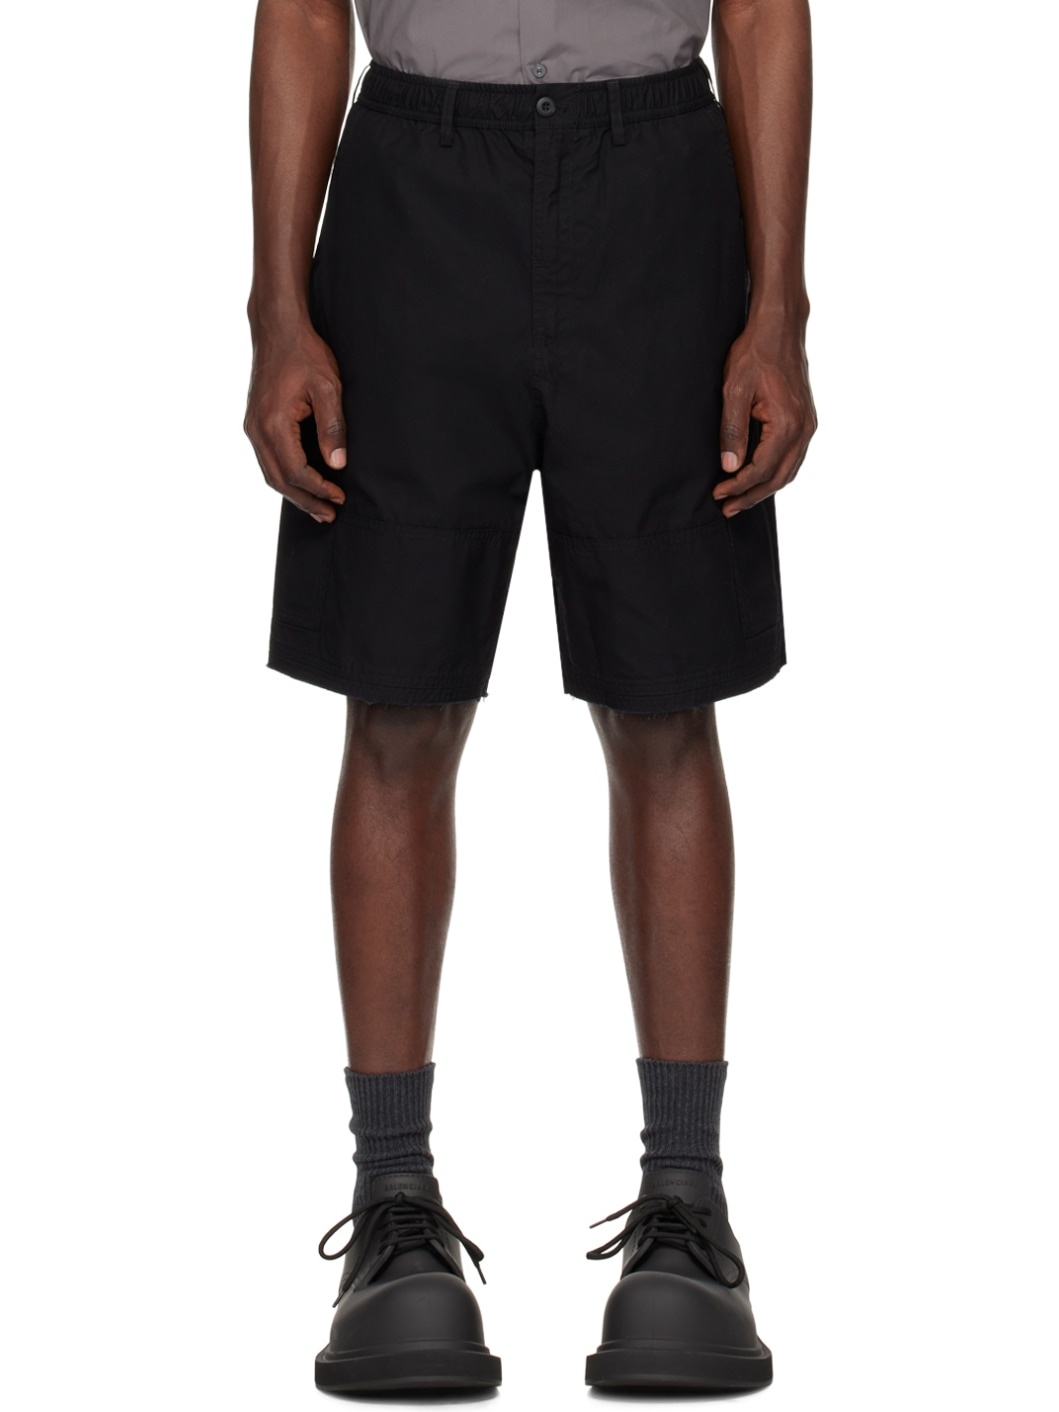 Black Team Shorts - 1